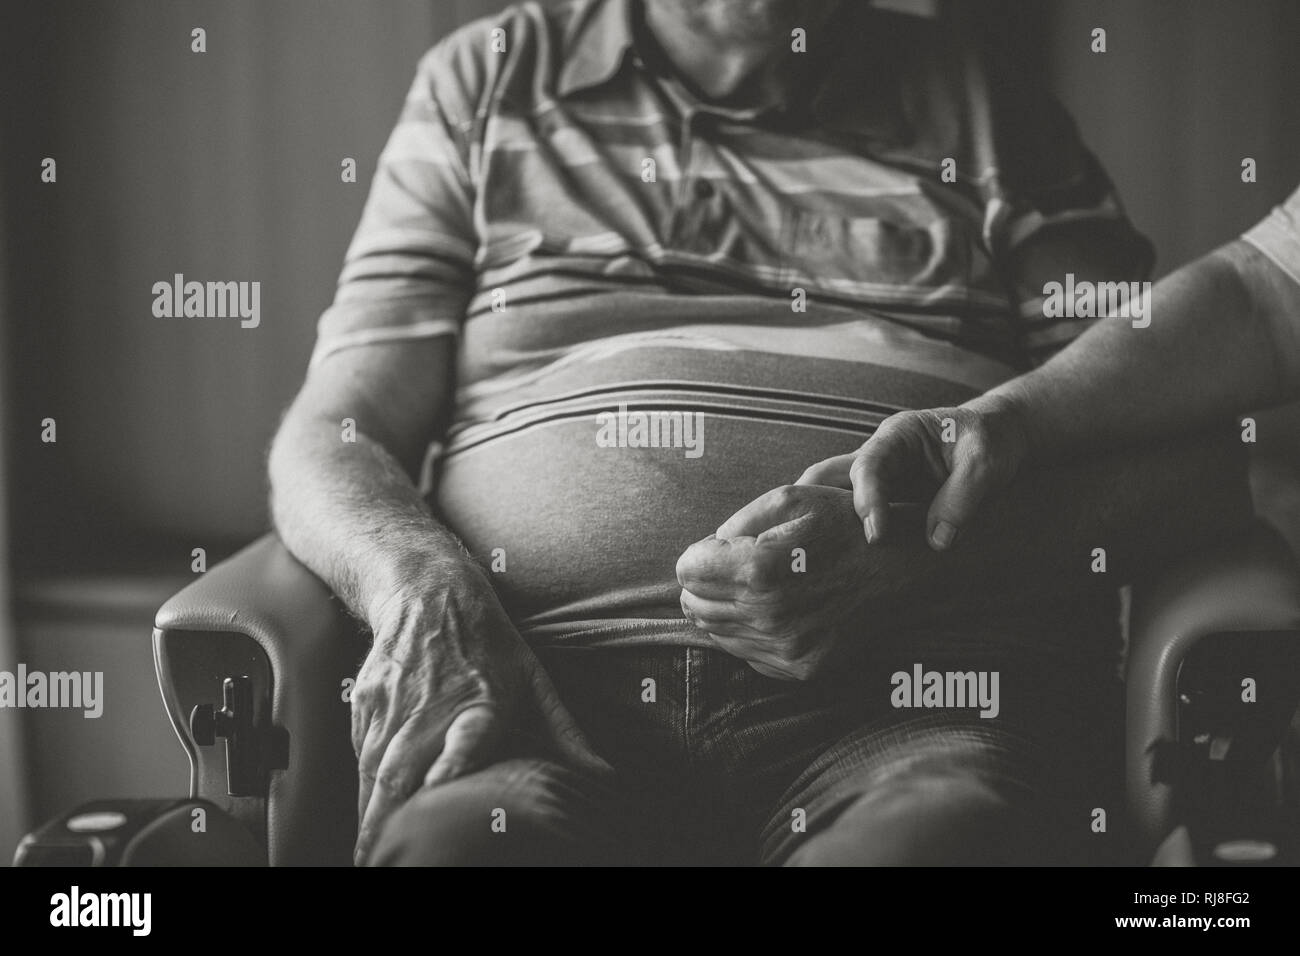 Seniorenpaar Zuhause, Mann im Rollstuhl, Händchen haltend, Nahaufnahme, dettaglio s/w Foto Stock